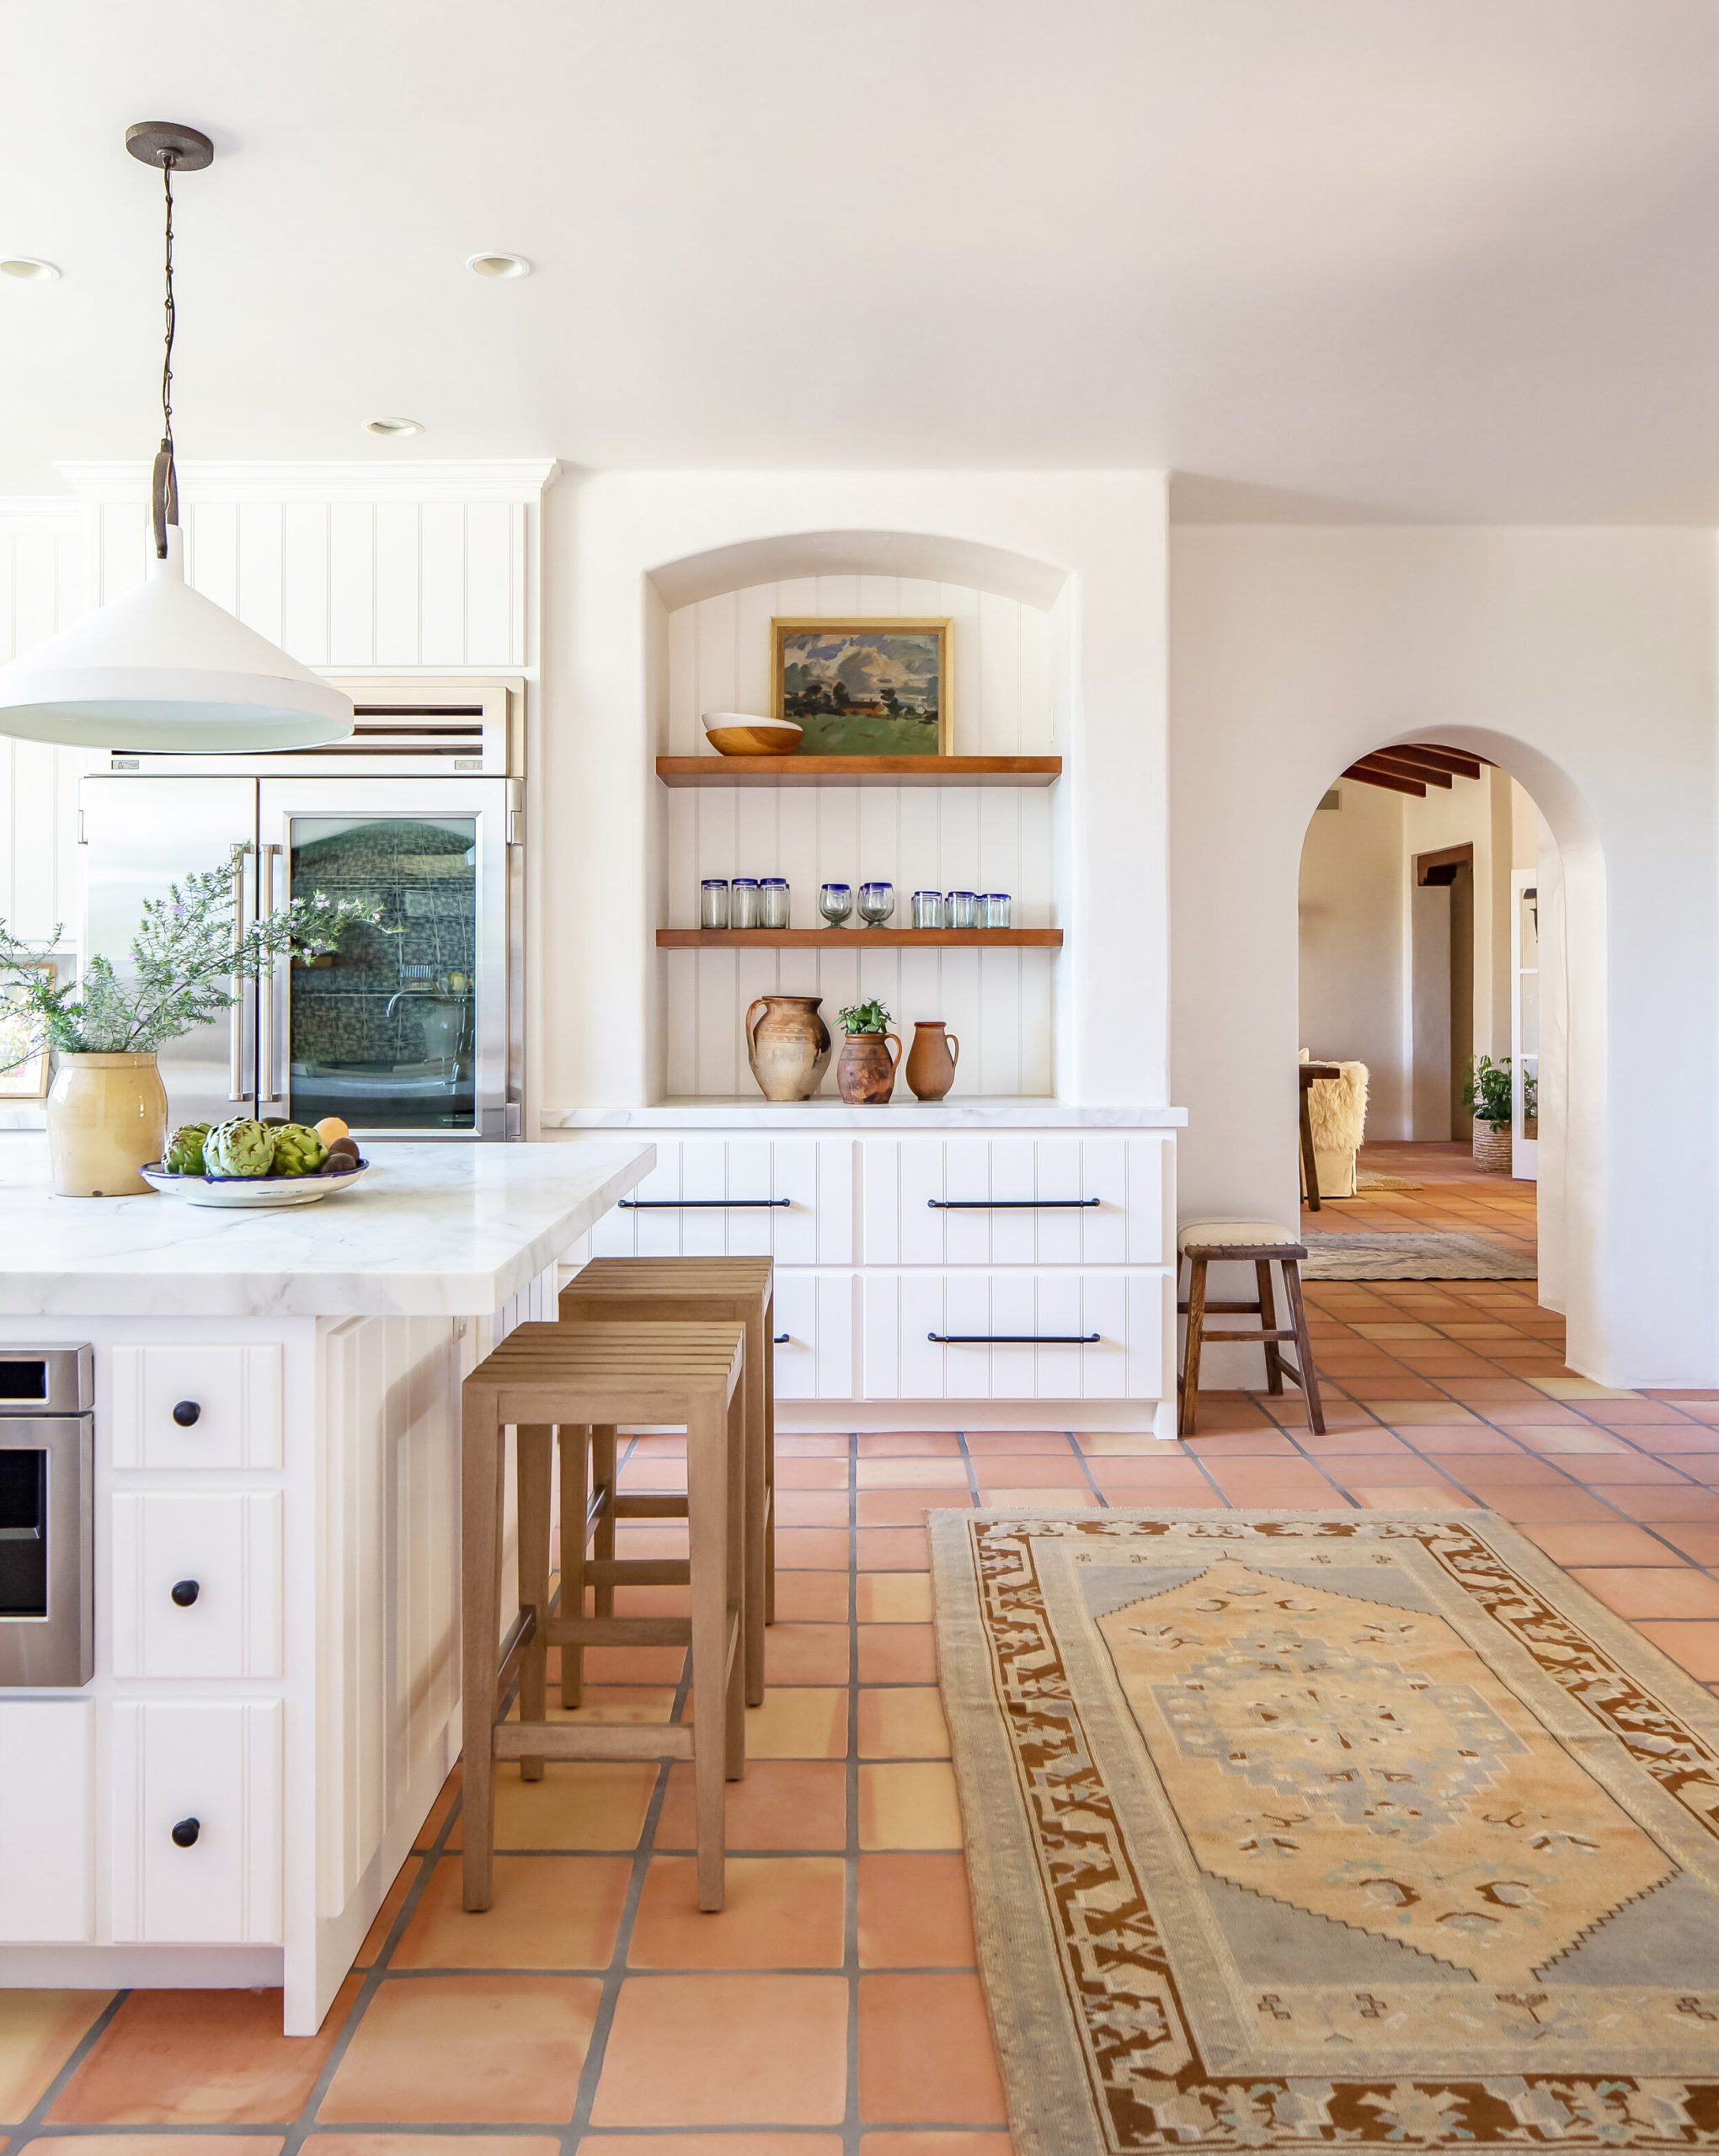 Spanish kitchen Terracotta floor tiles intimatelivinginteriors